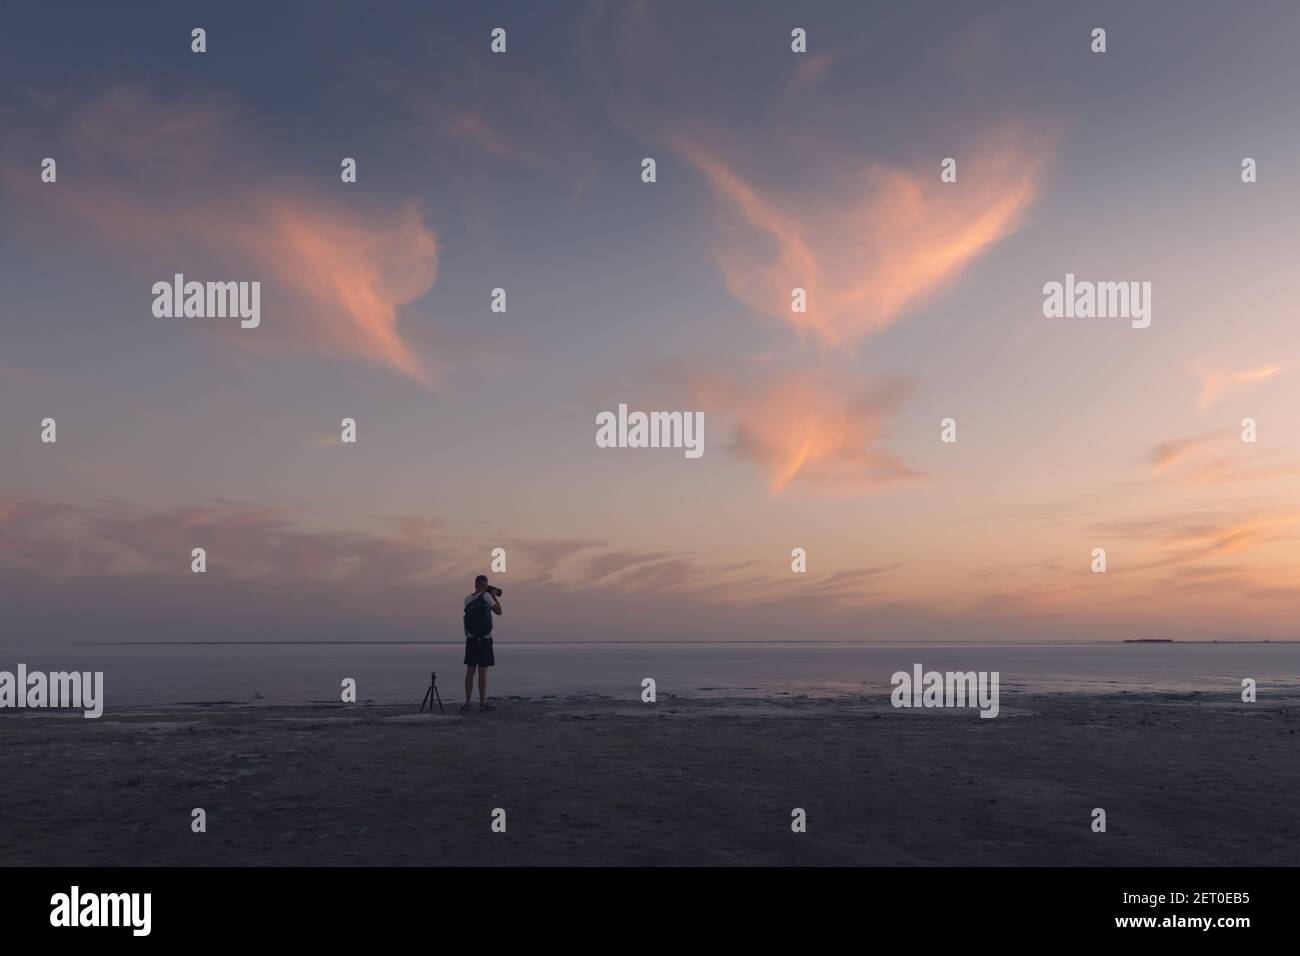 Fotograf, der mit einem Stativ des Ozeanaufgangs fotografiert. Sonnenuntergang auf dem Meer mit rot glühenden wolkigen Himmel. Landschaftsfotografie Stockfoto